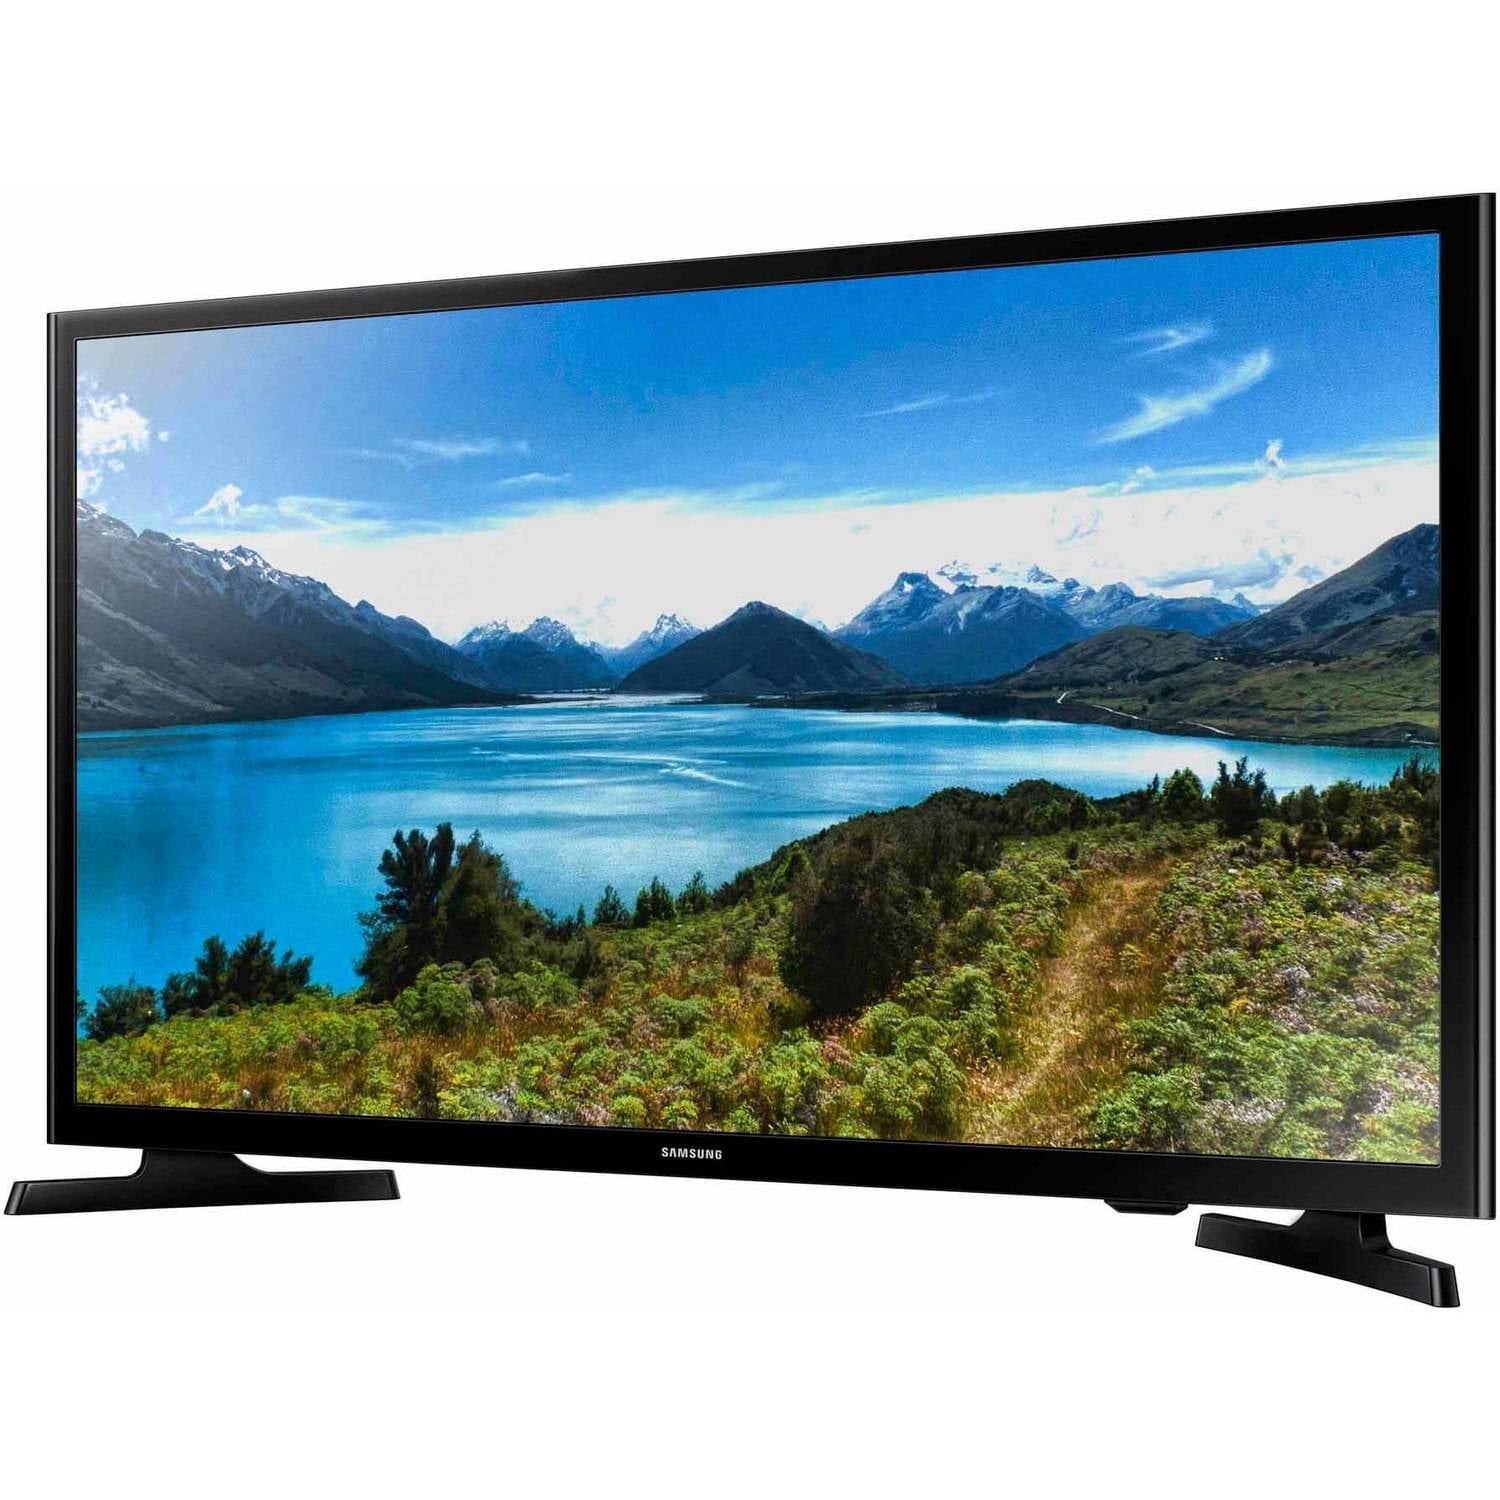 erosie chef Af en toe SAMSUNG 32" Class HD (720P) LED TV (UN32J4000BFXZA) (Discontinued) -  Walmart.com